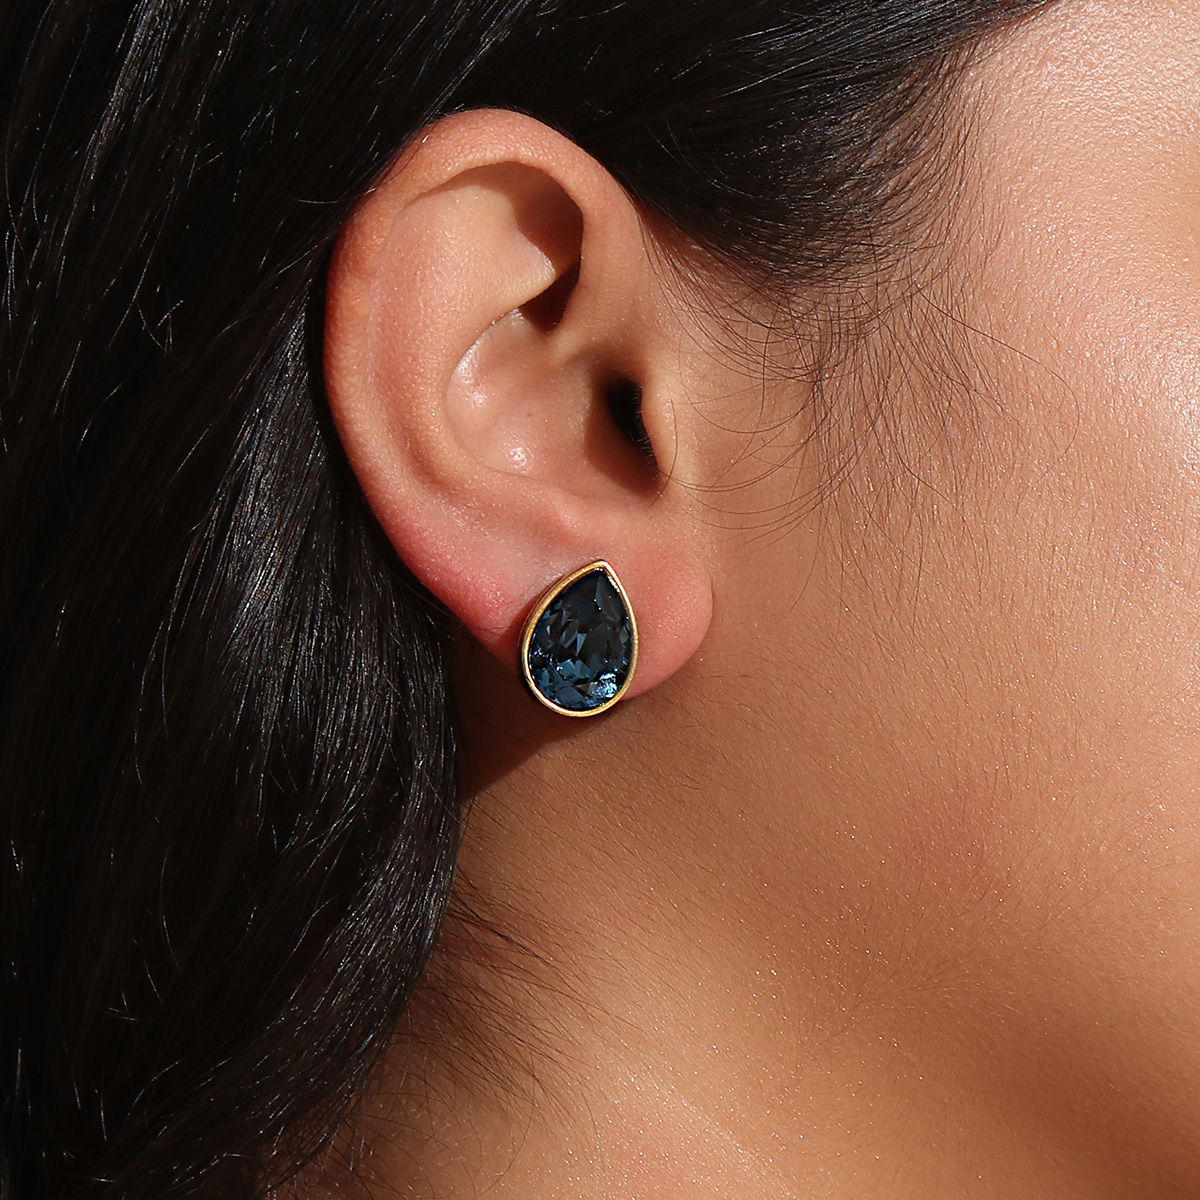 Buy Silver Dangle Drop Earrings With Dark Blue Teardrop Online in India   Etsy